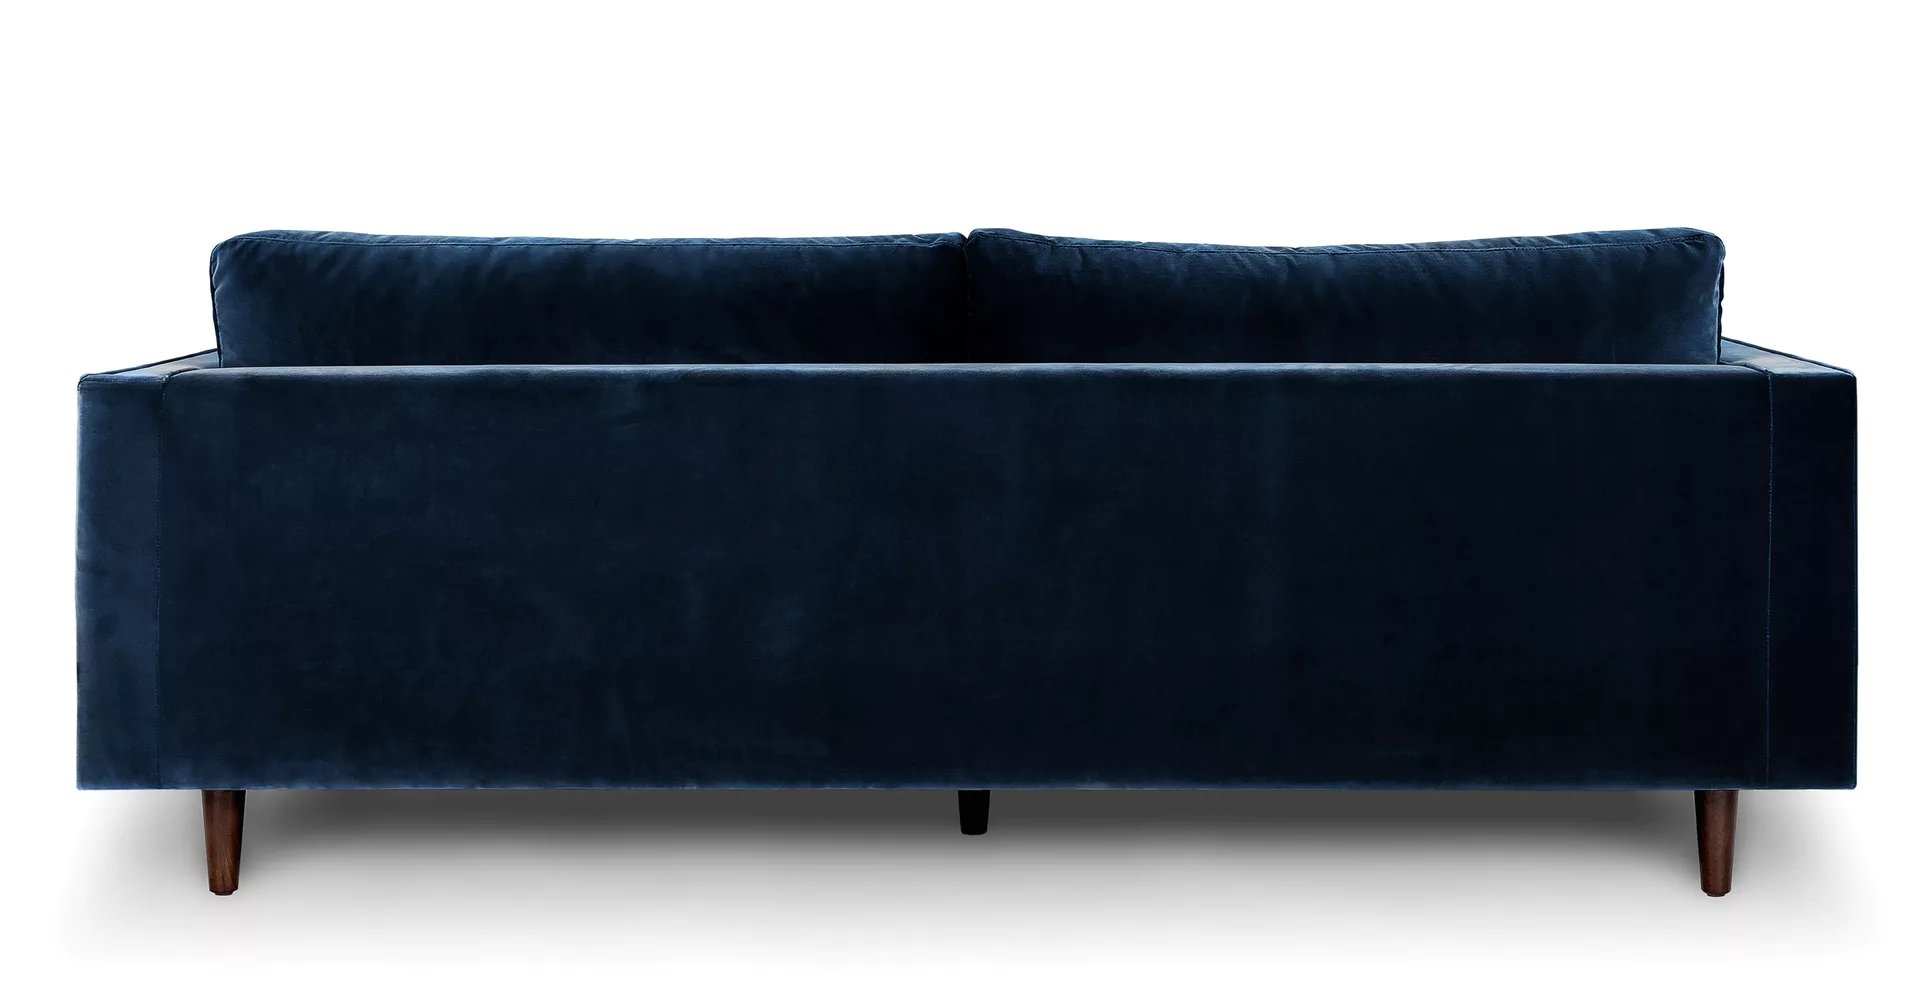 Sven 88" Tufted Velvet Sofa - Cascadia Blue - Image 7